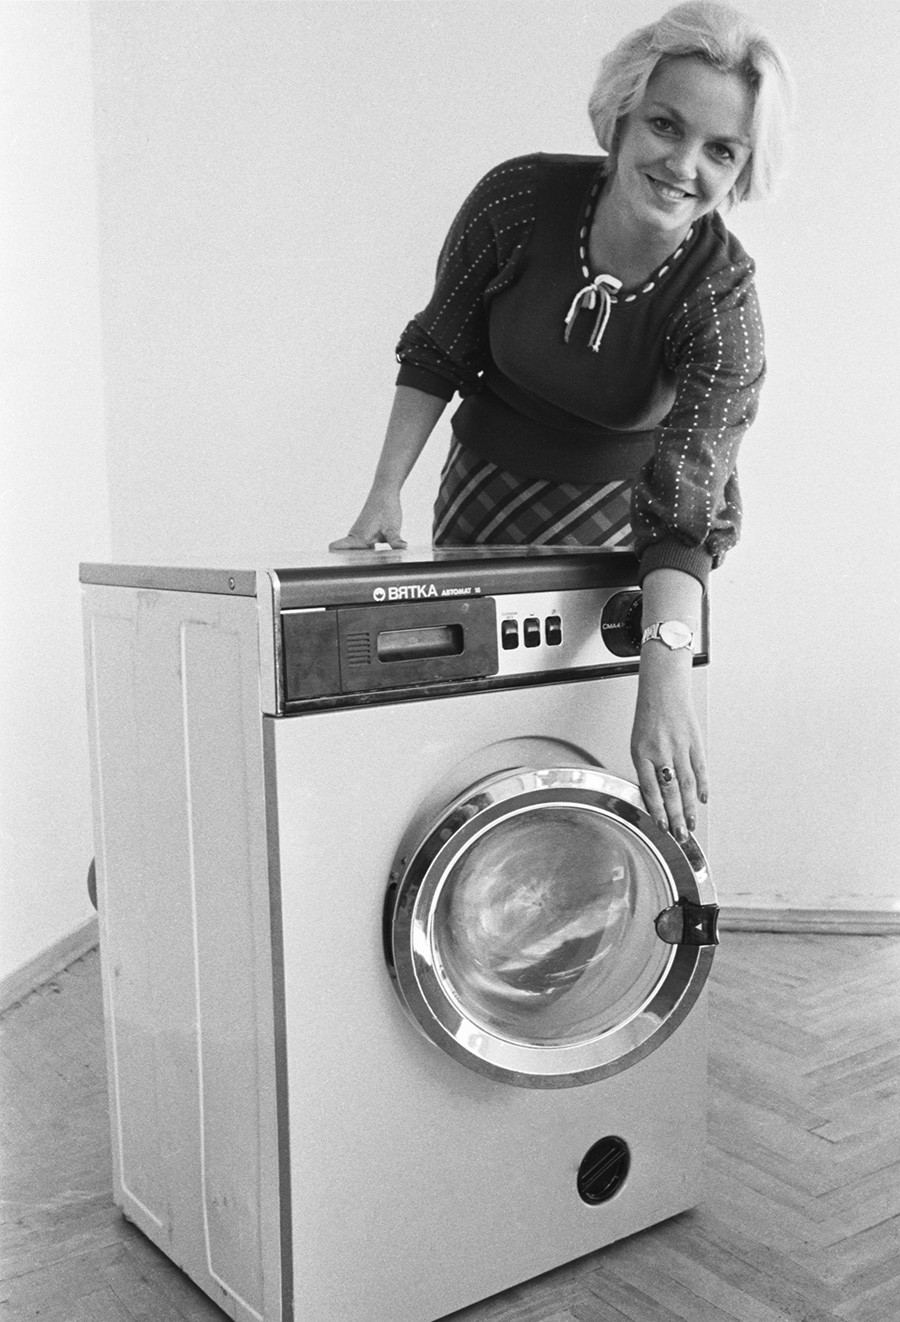 Vyatka-Avtomat washing machine, 1978.